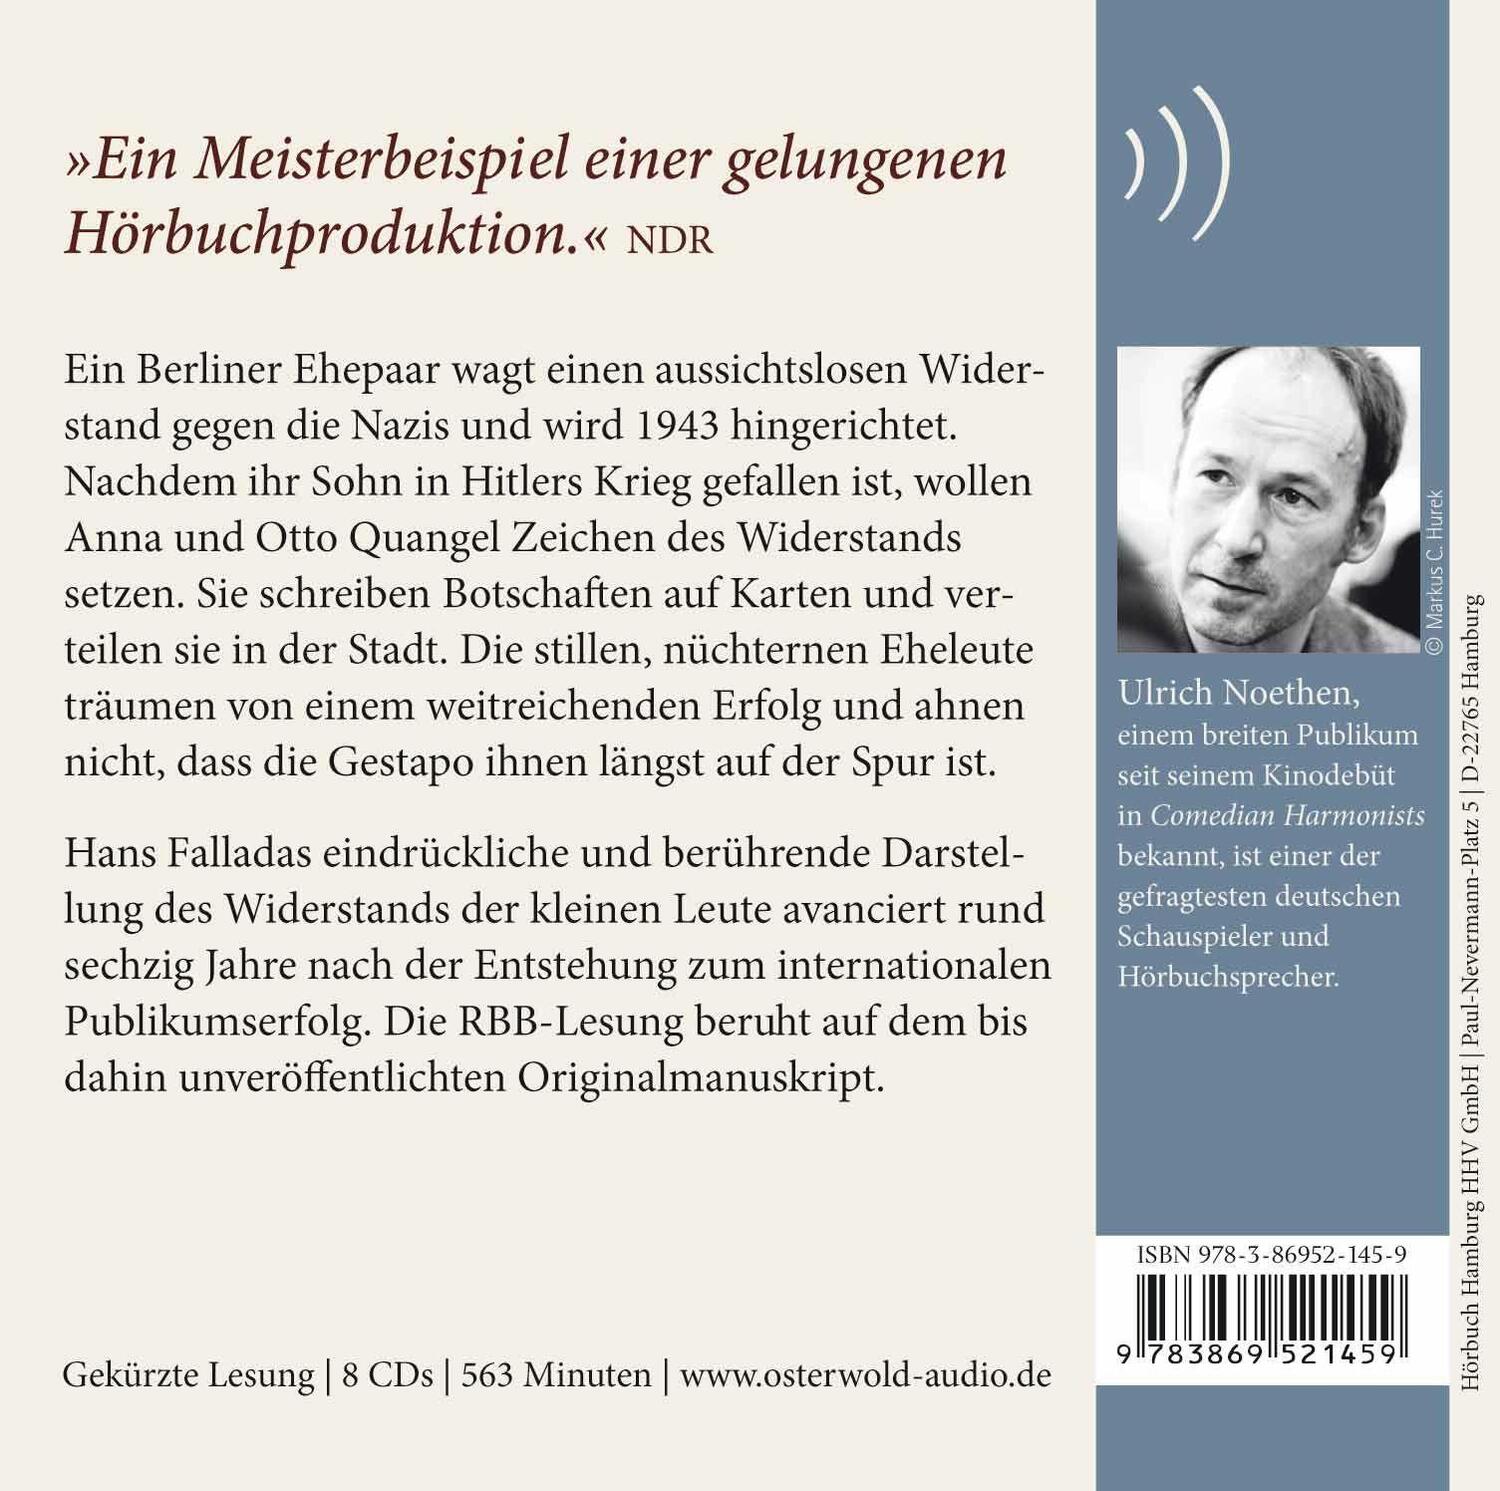 Rückseite: 9783869521459 | Jeder stirbt für sich allein | Hans Fallada | Audio-CD | 8 Audio-CDs